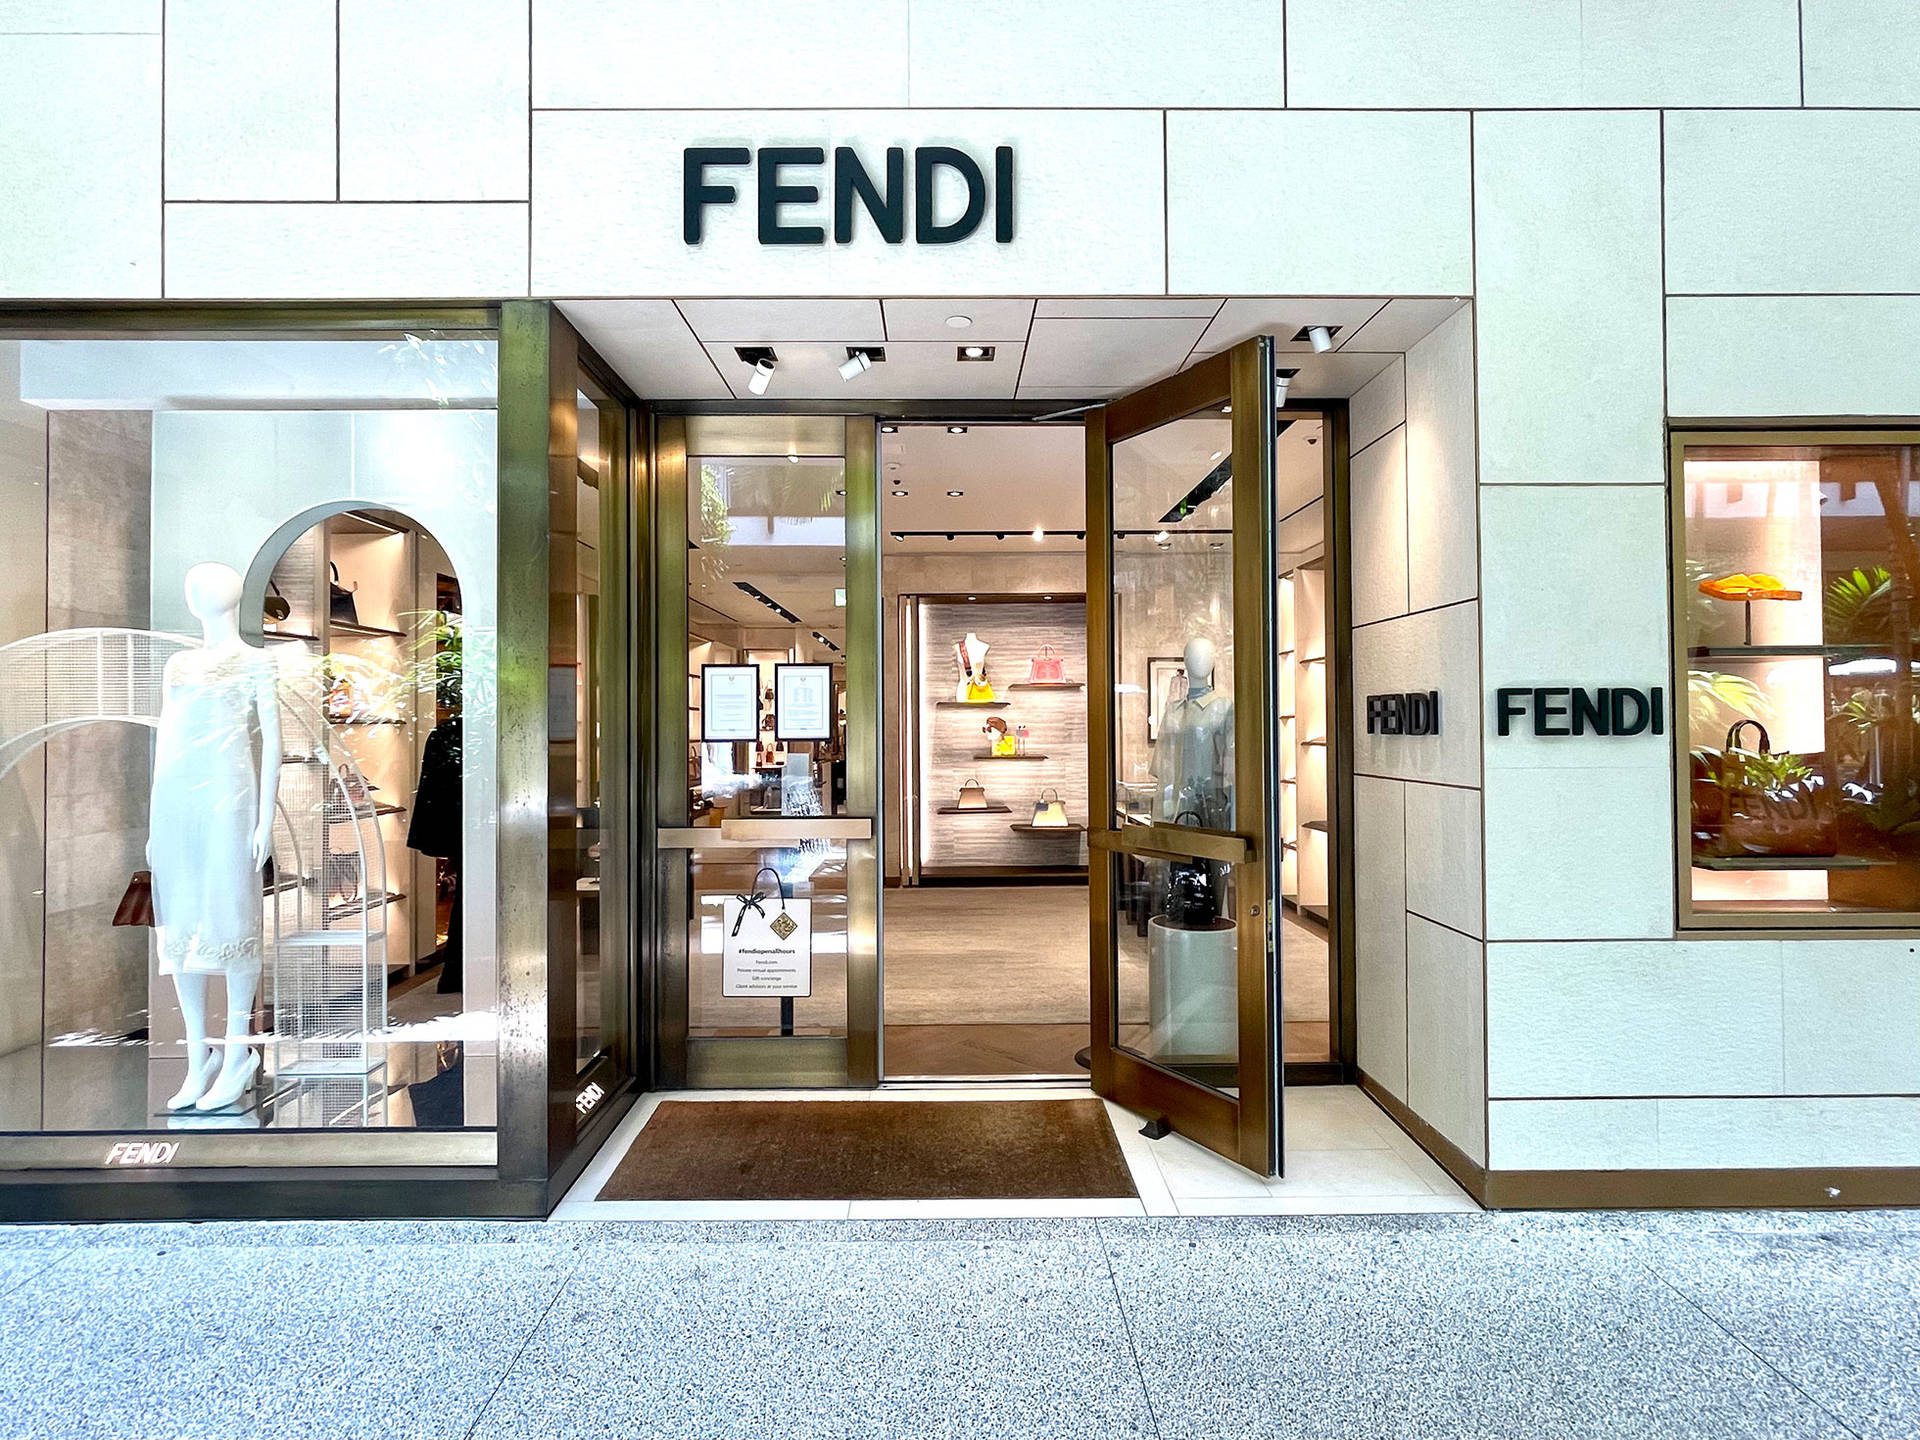 High-end Fashion Fendi Store Wallpaper